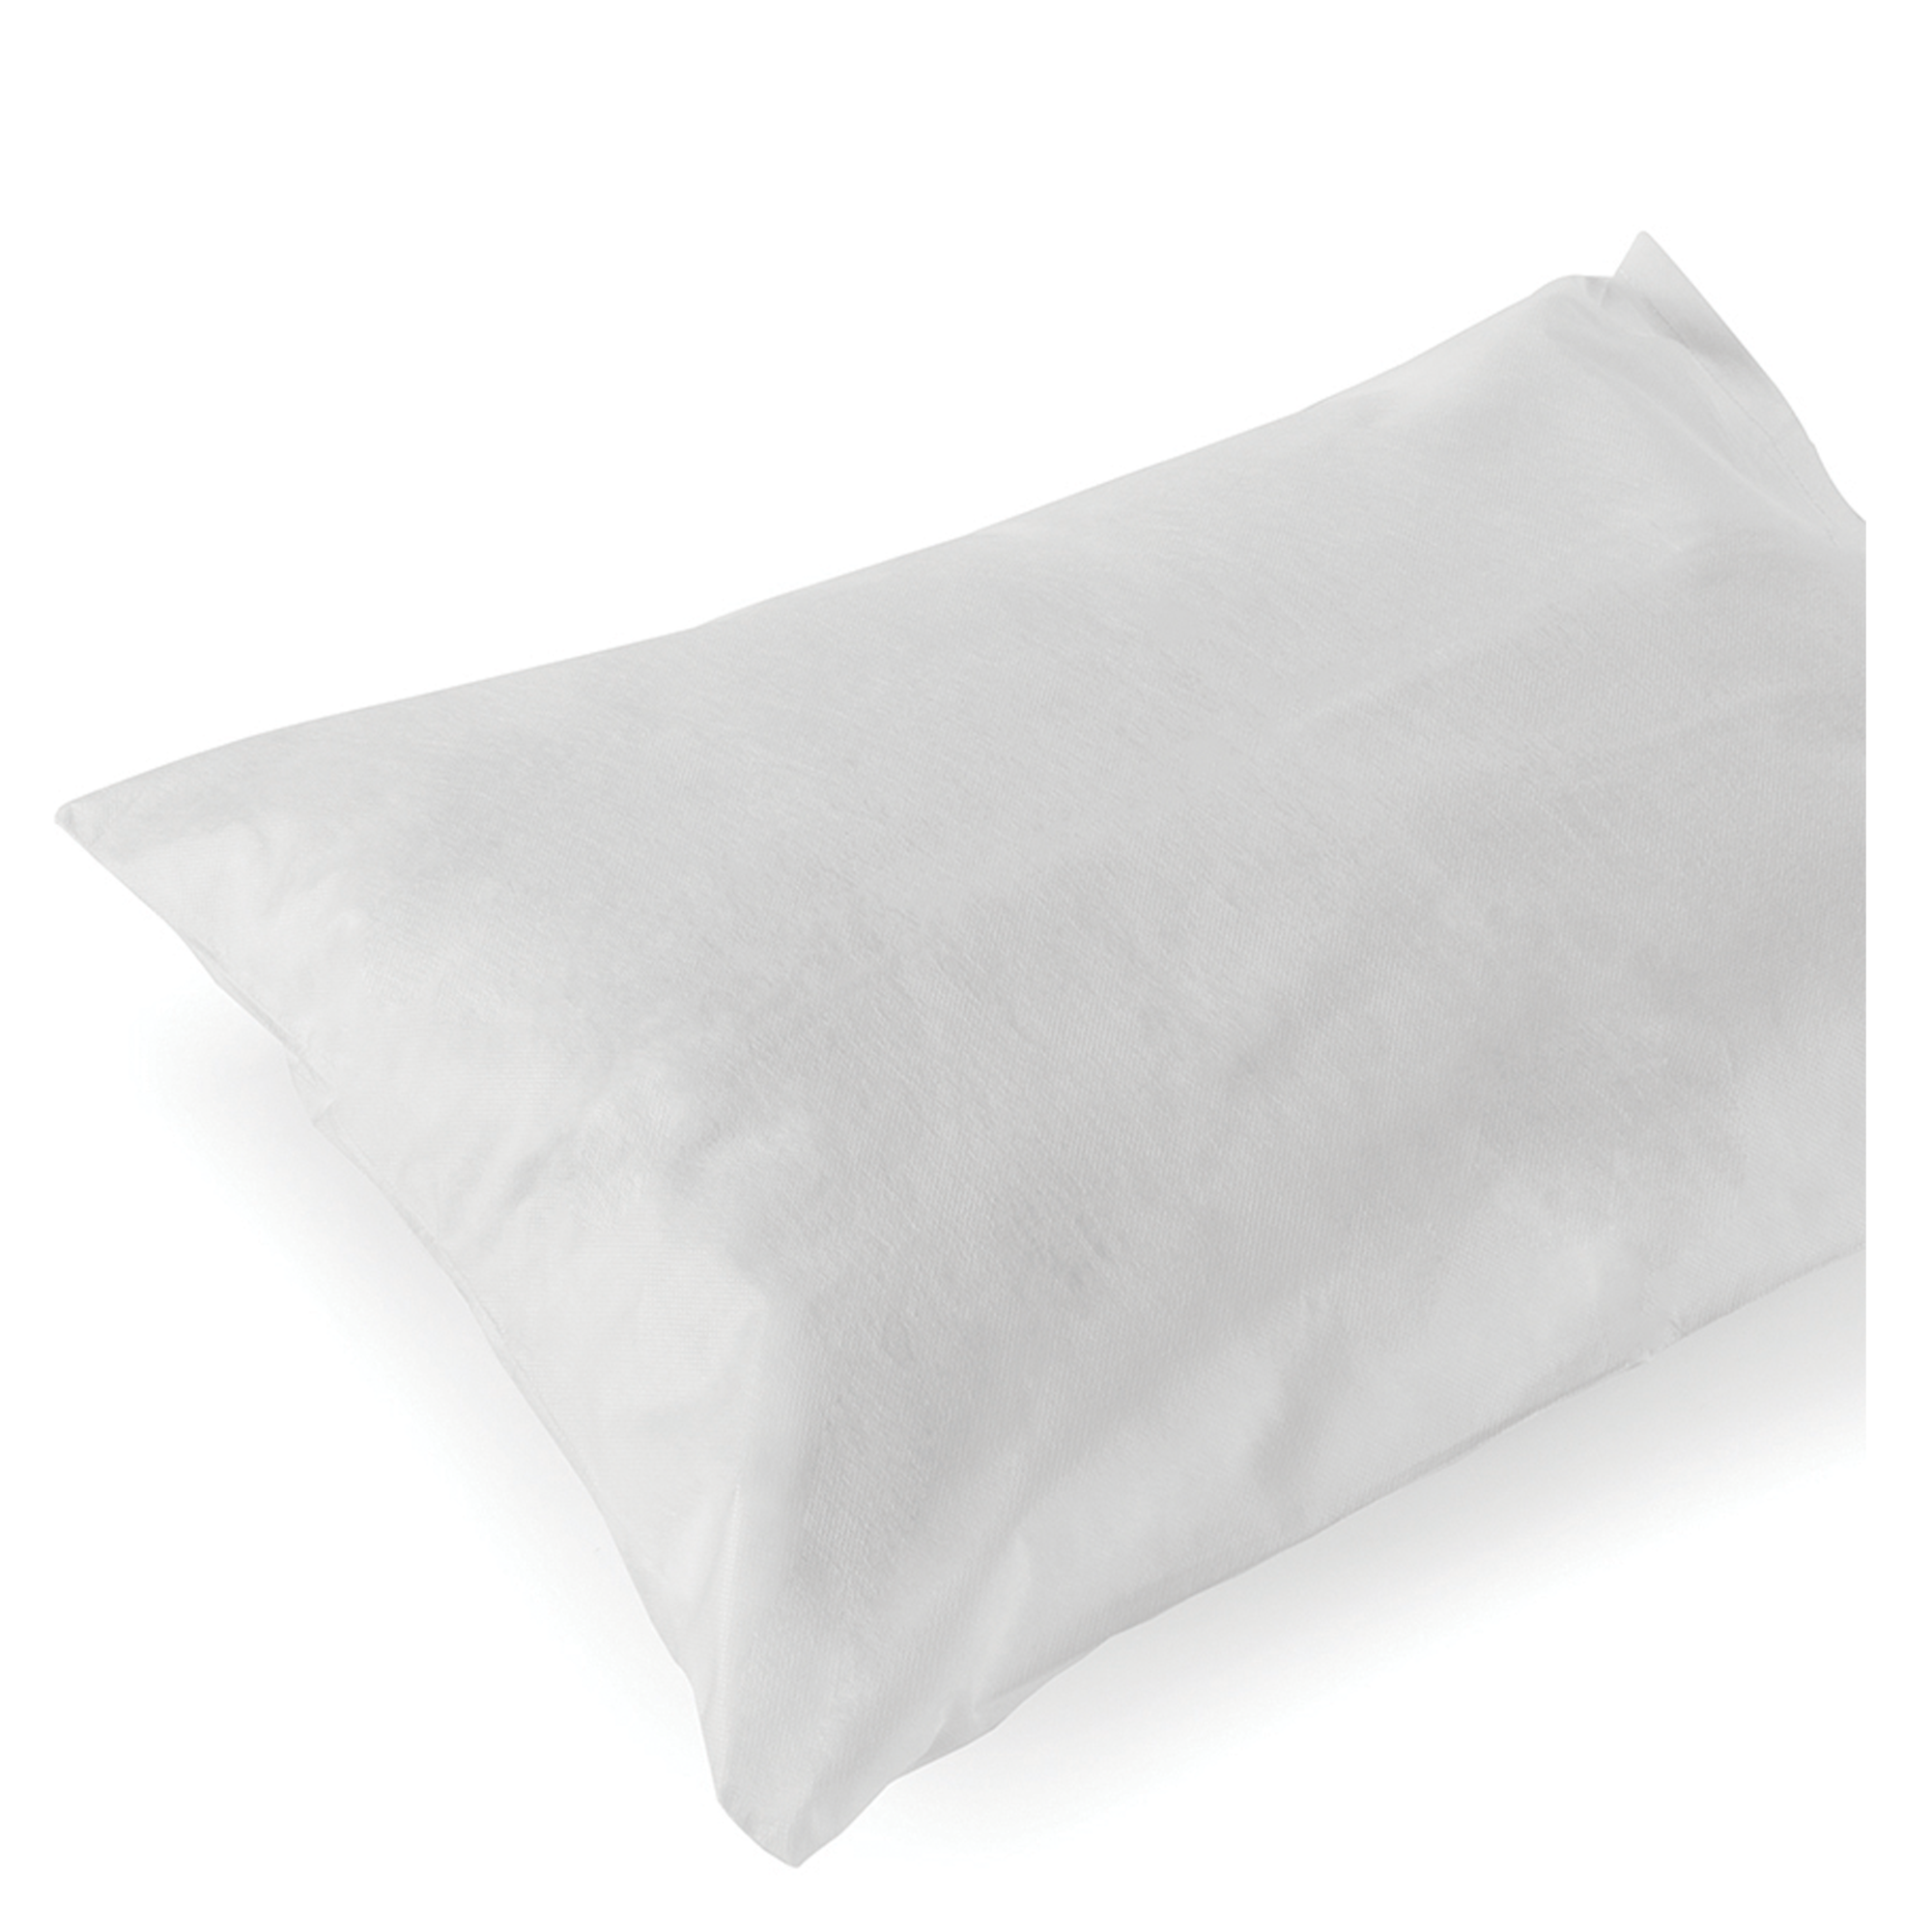 Disposable Pillowcases, Nonwoven